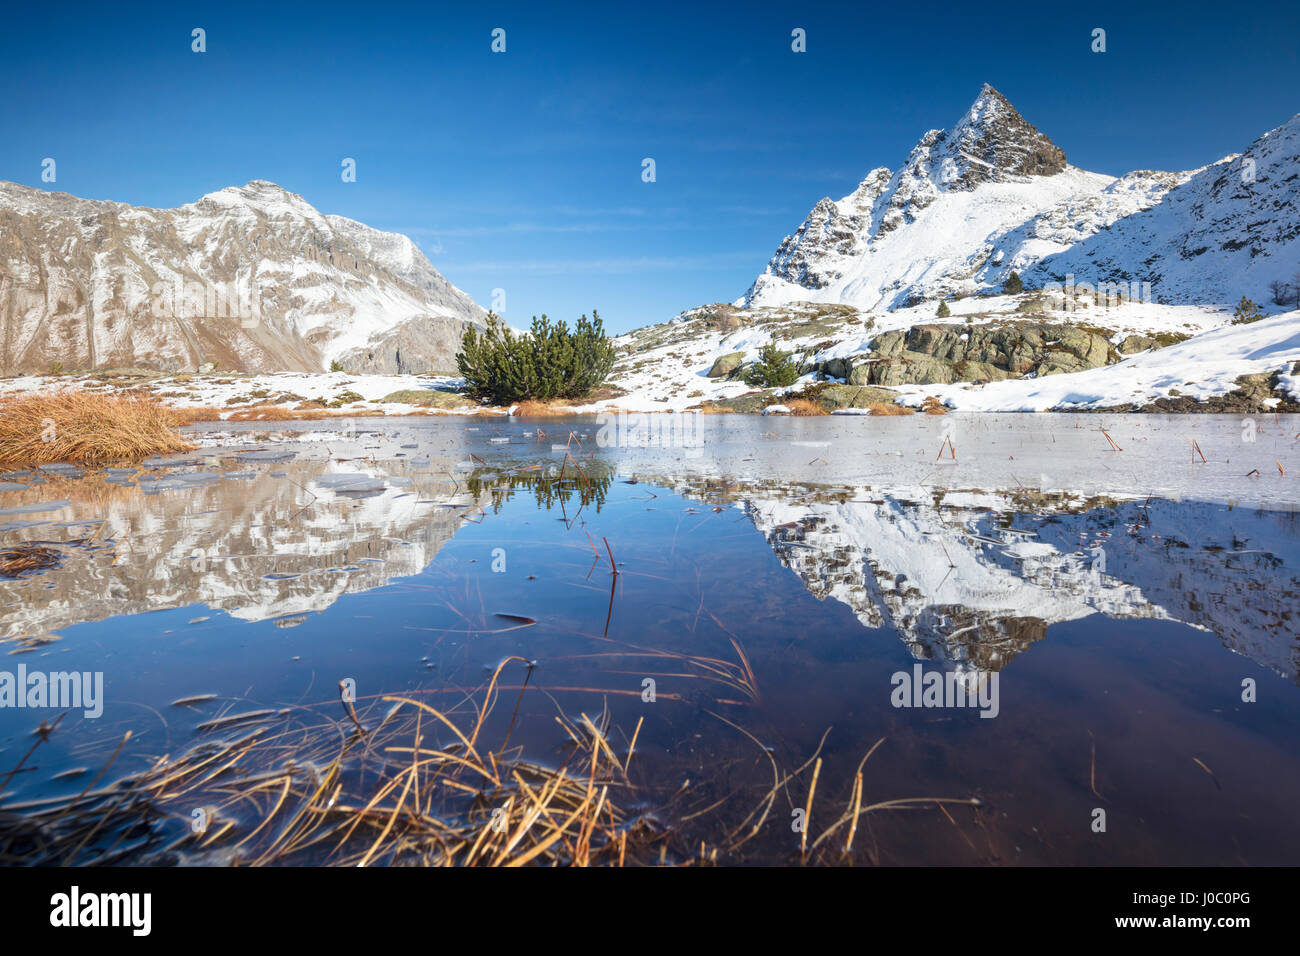 Vette innevate sono riflesse nel lago alpino parzialmente congelato, Lejets Crap Alv del Cantone dei Grigioni, Engadina, Svizzera Foto Stock